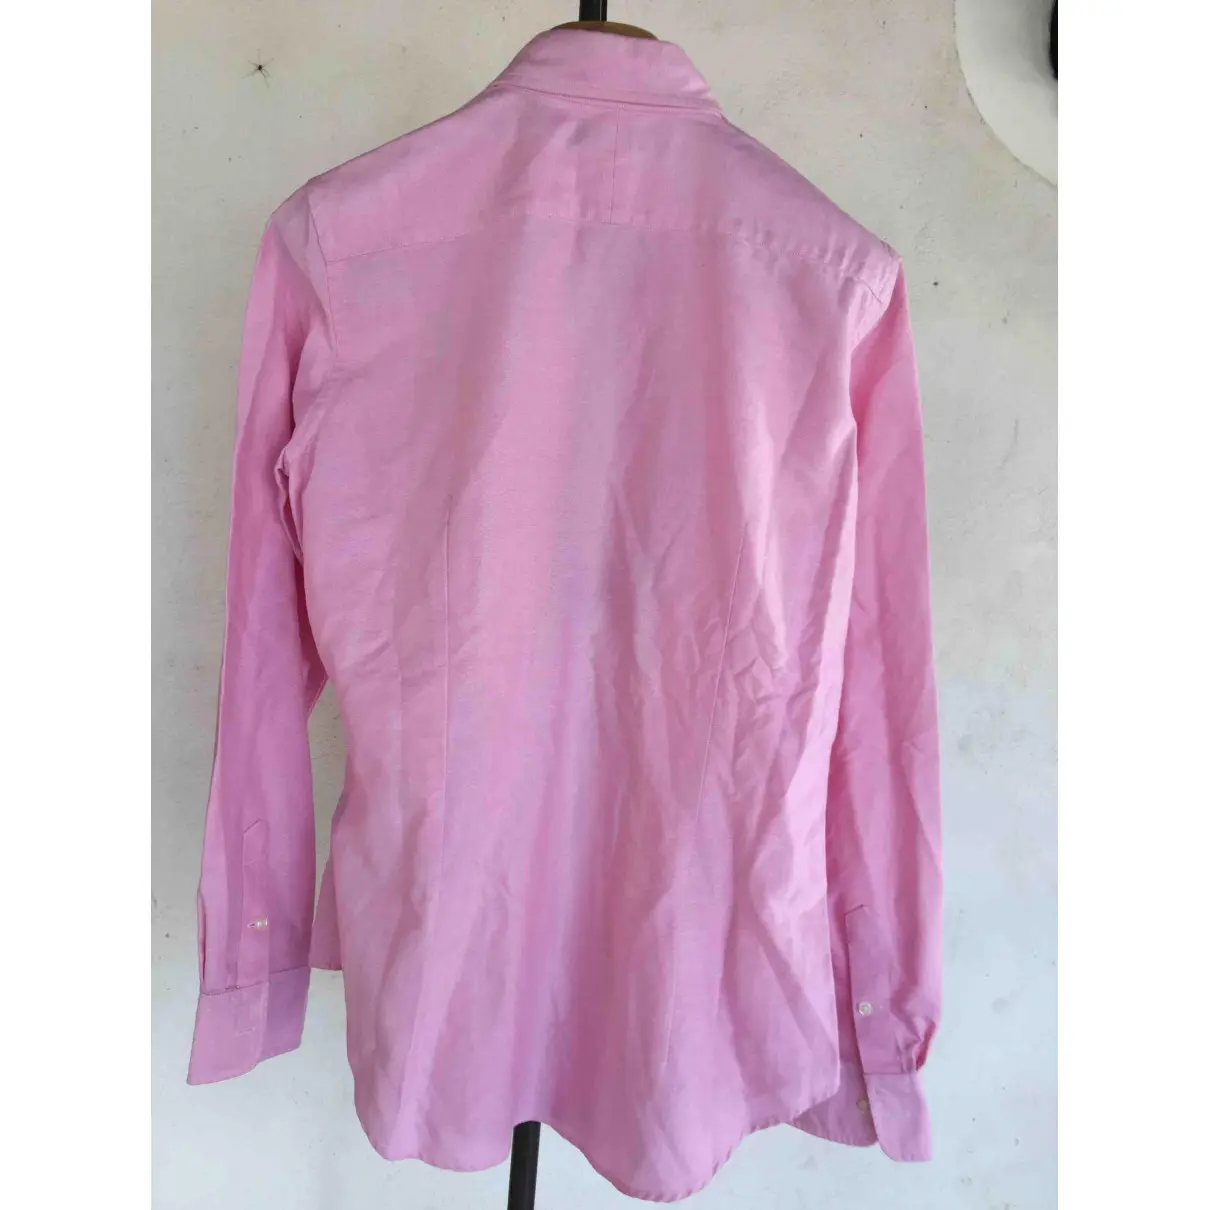 Buy Ralph Lauren Pink Cotton Top online